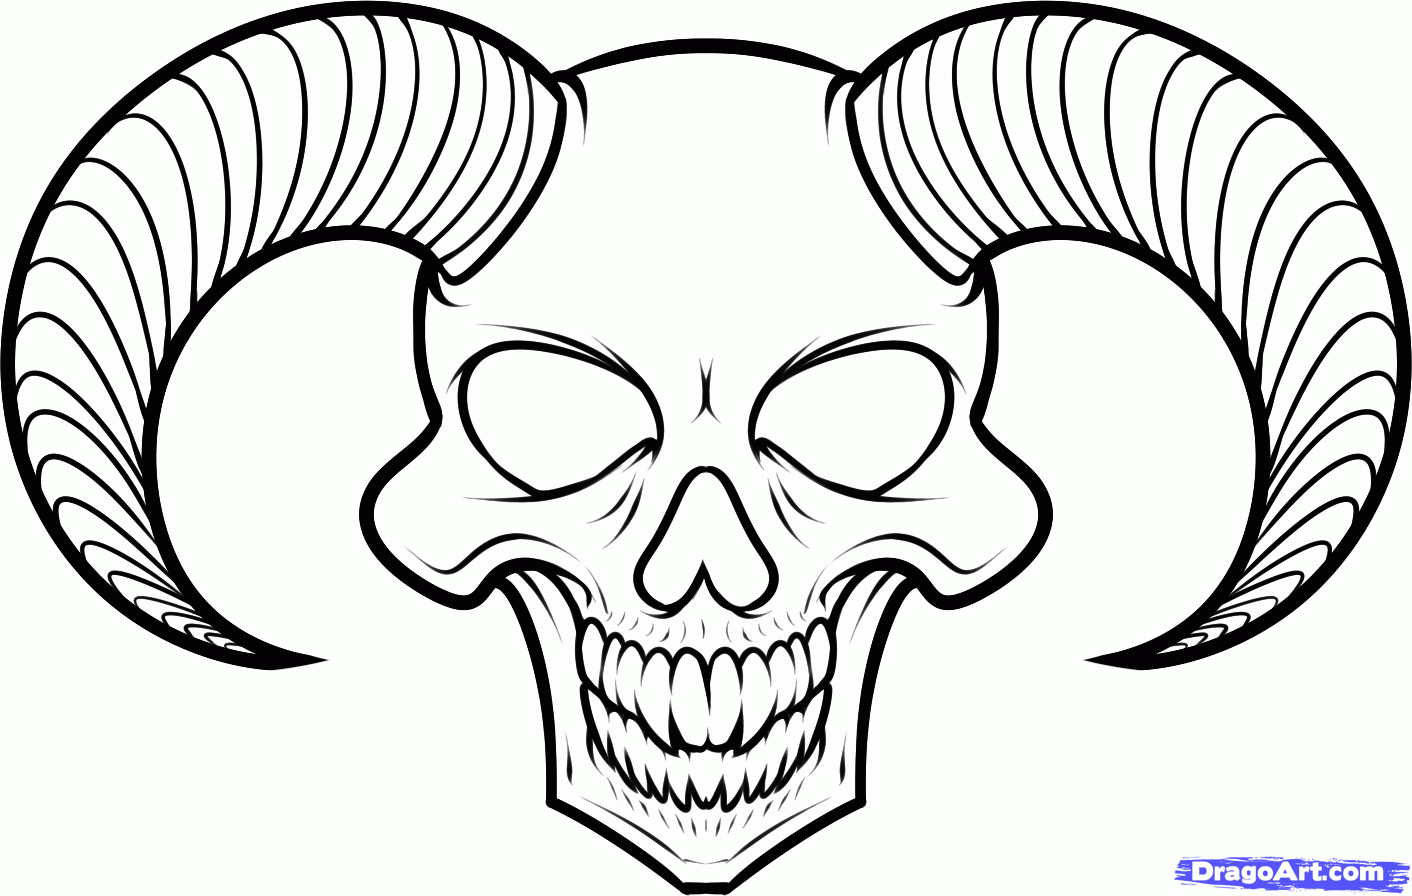 How to Draw a Devil Skull, Devil Skull Tattoo, Step by Step ...